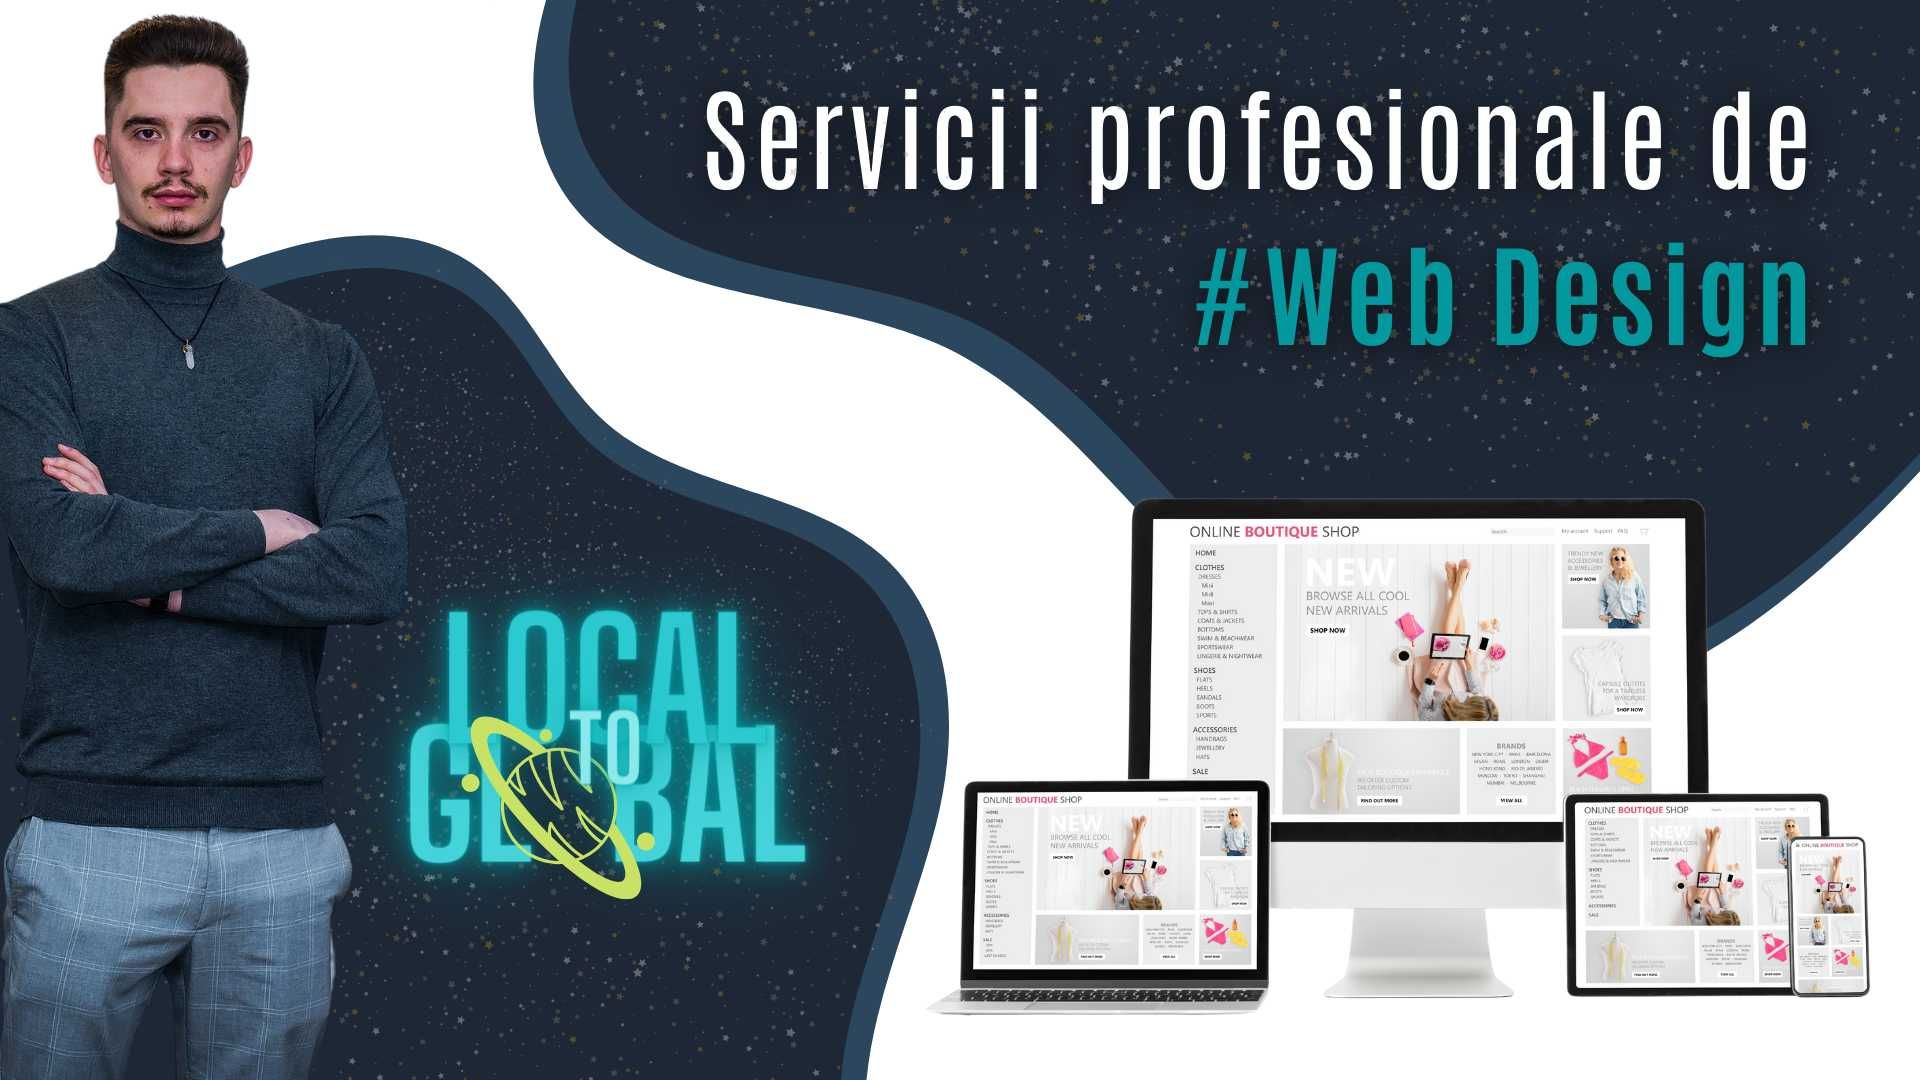 Servicii profesionale de WebDesign - Construim Website-uri de calitate